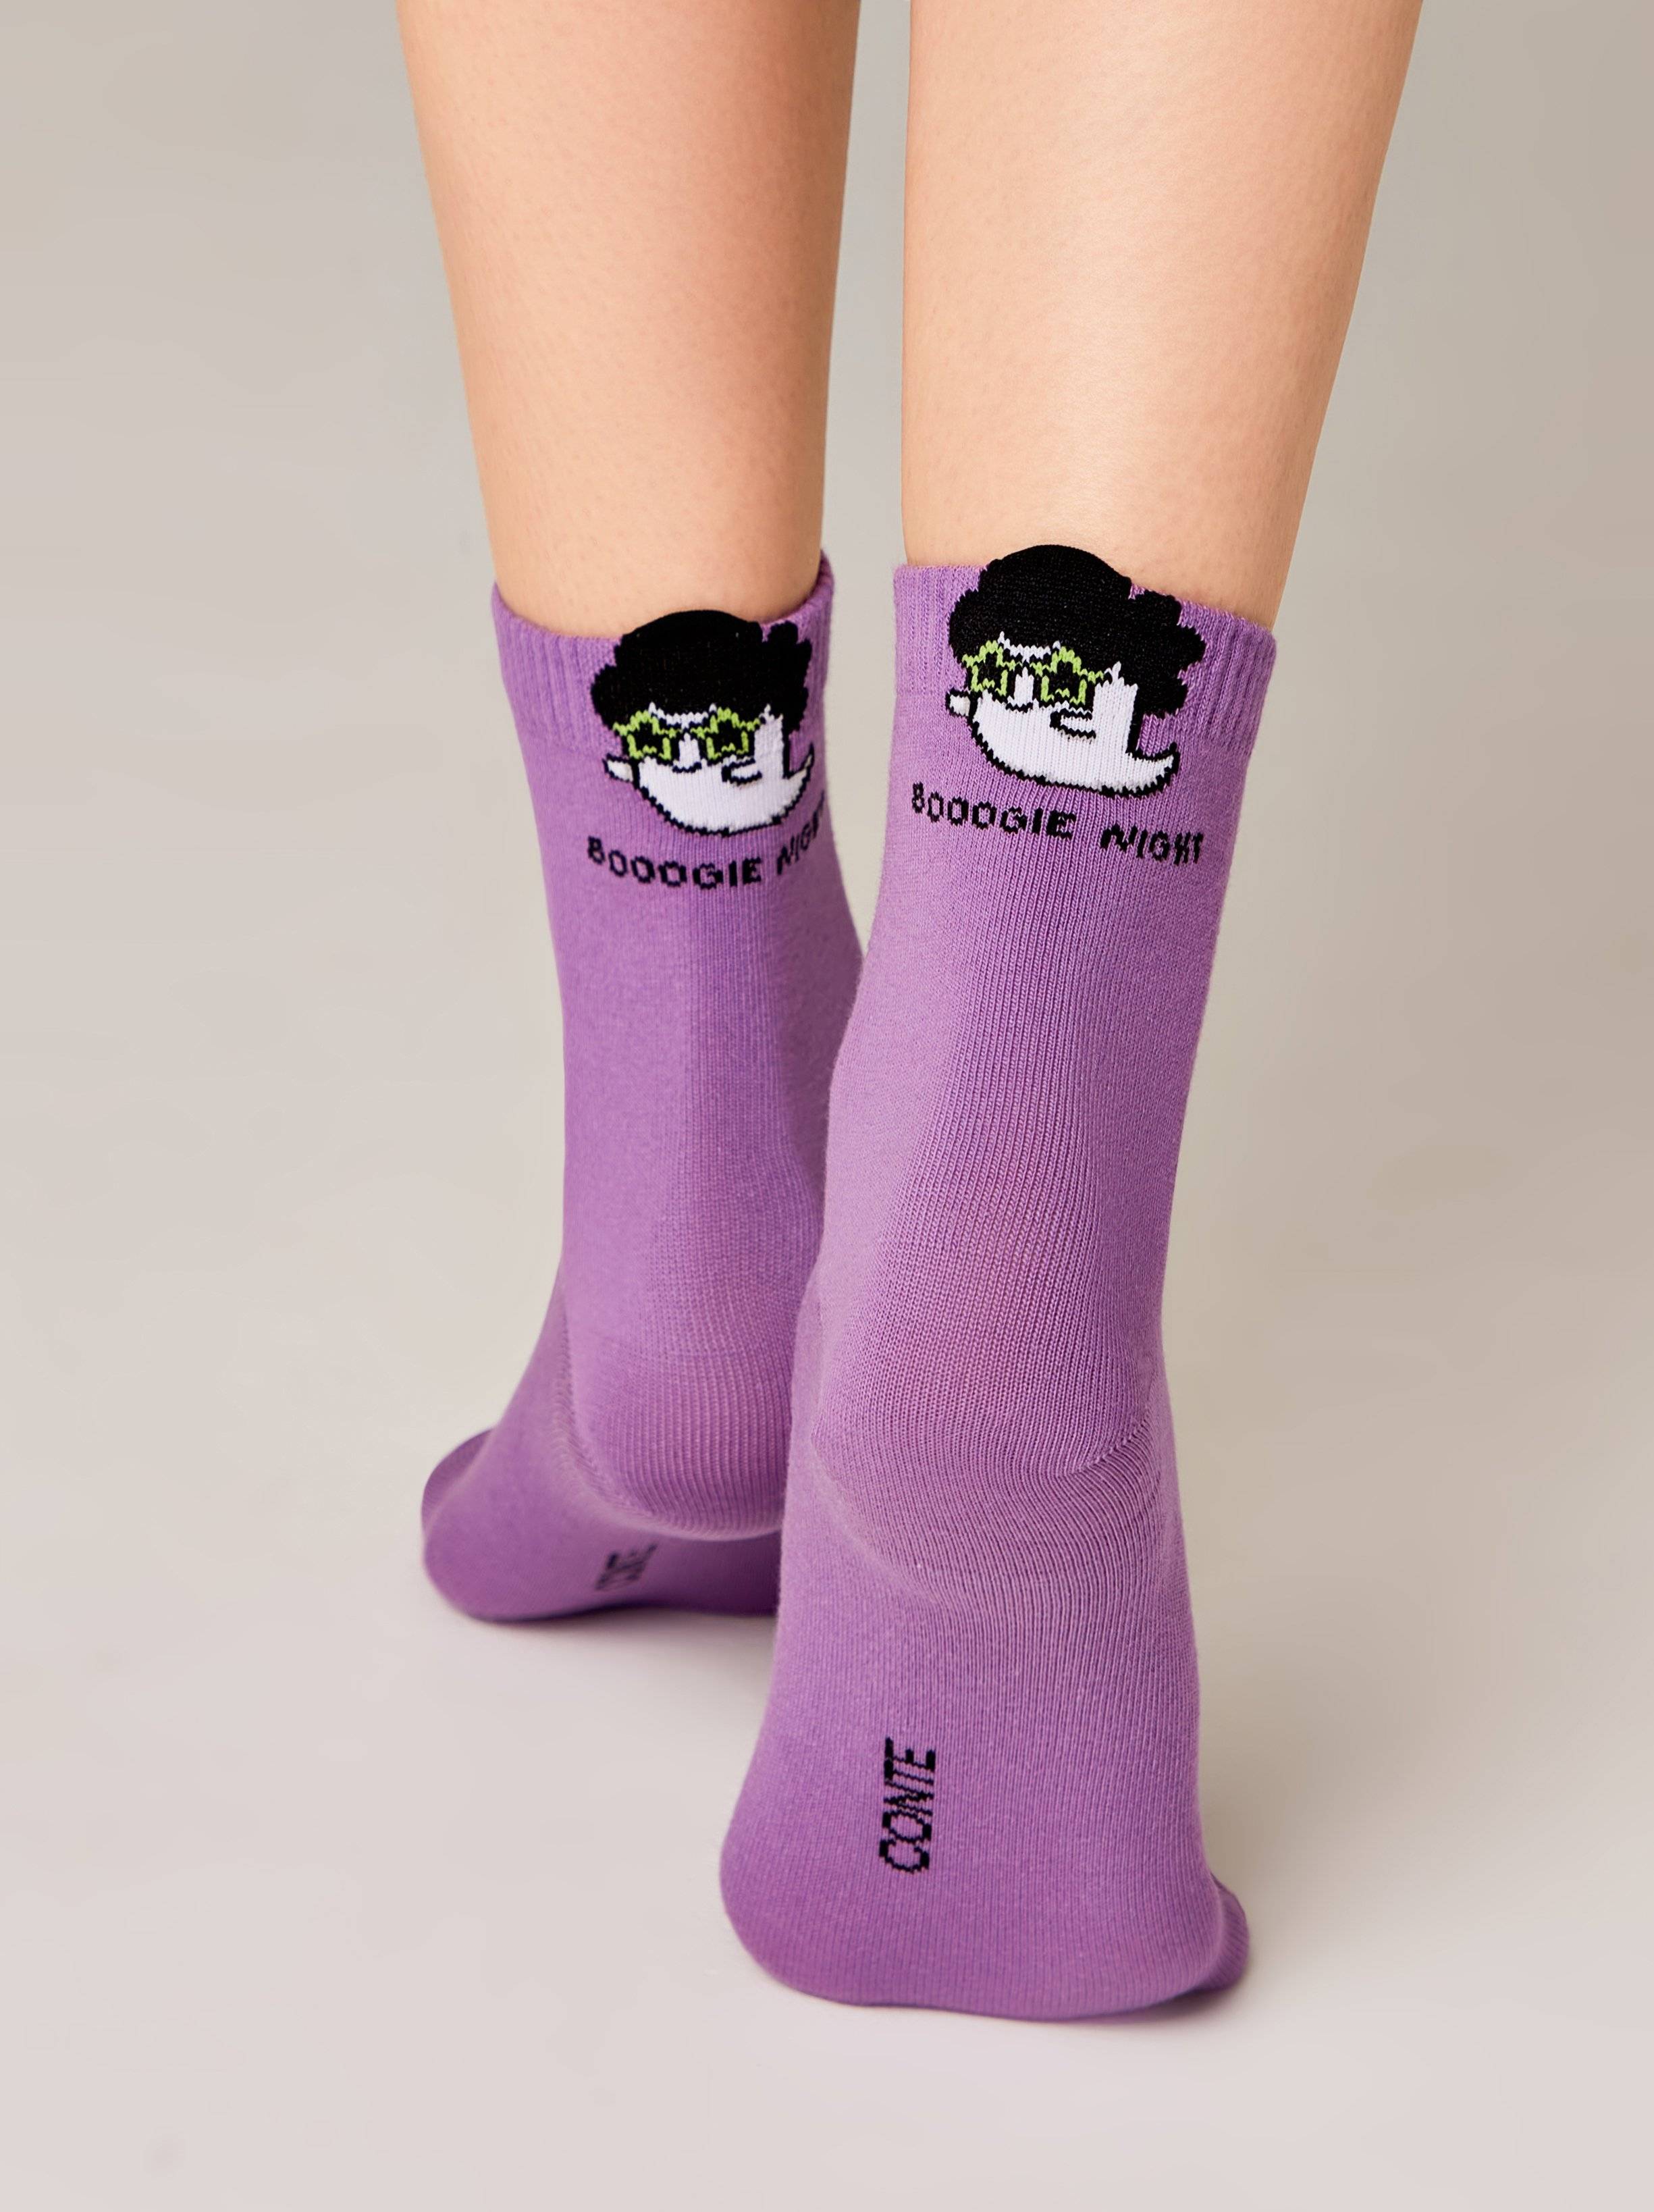 Conte Woman's Socks 539